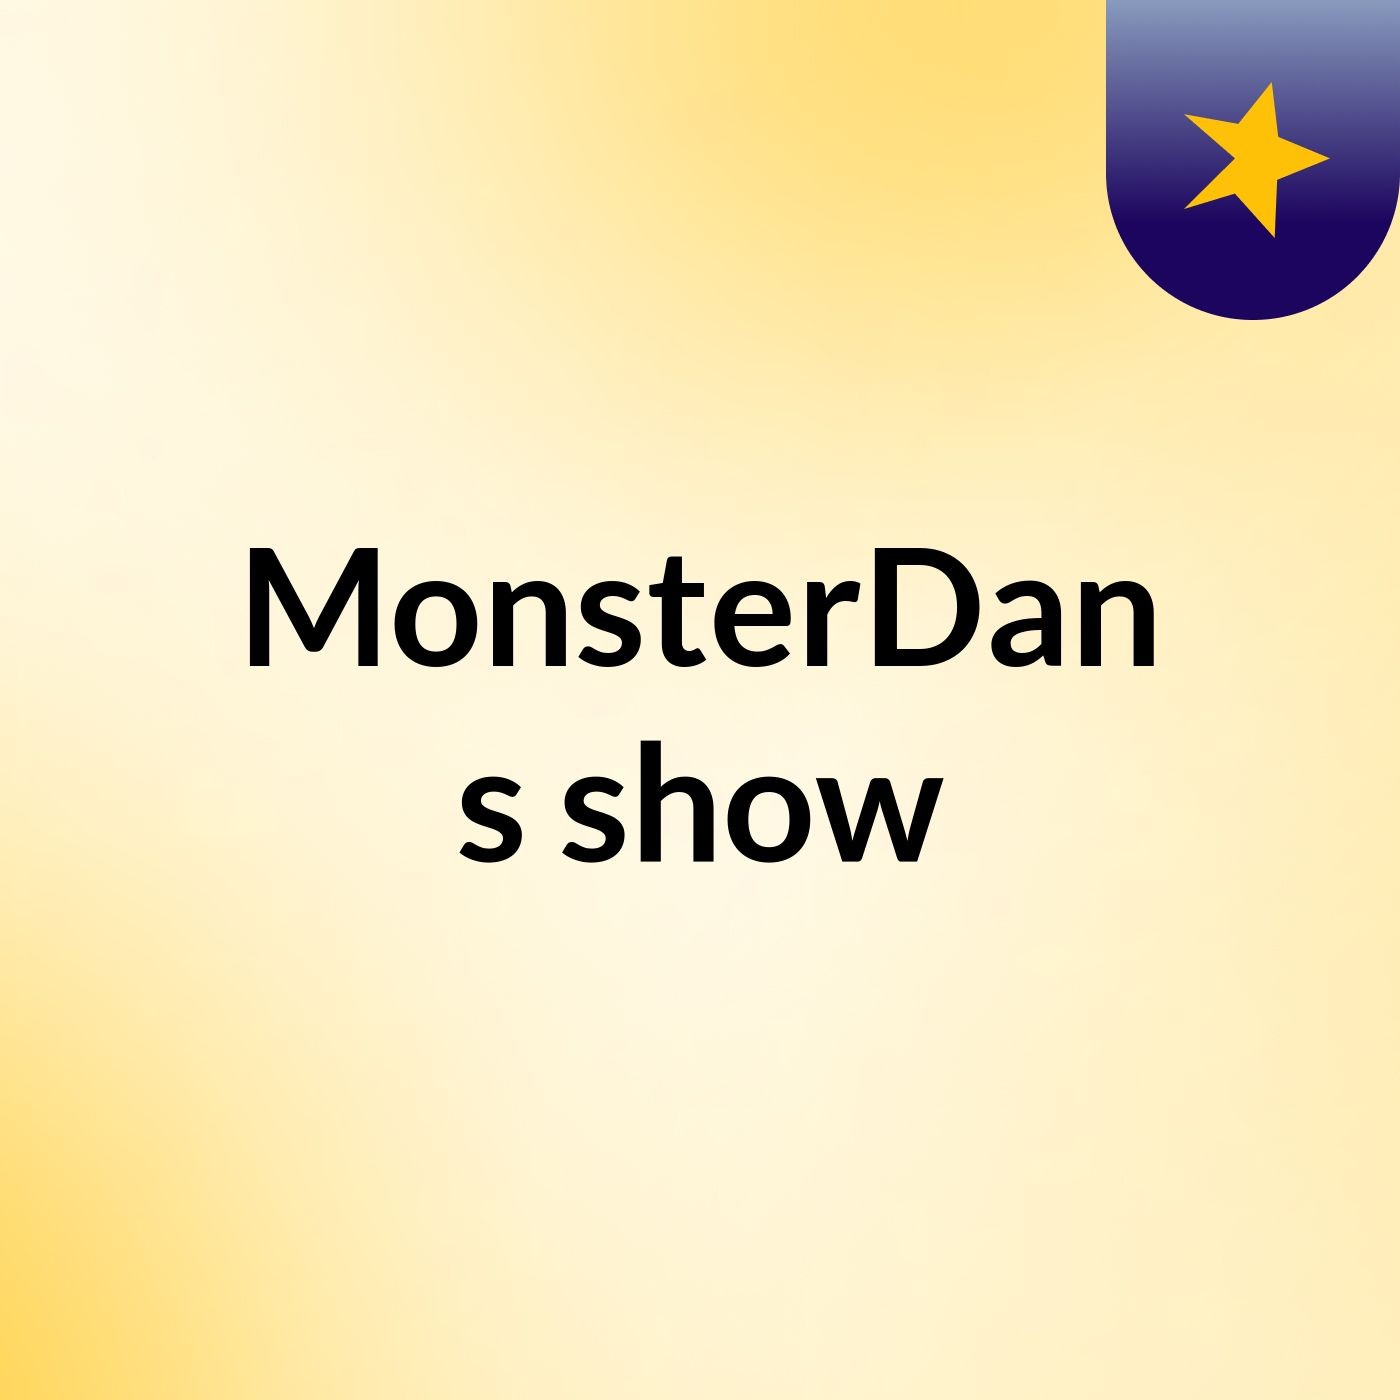 MonsterDan's show